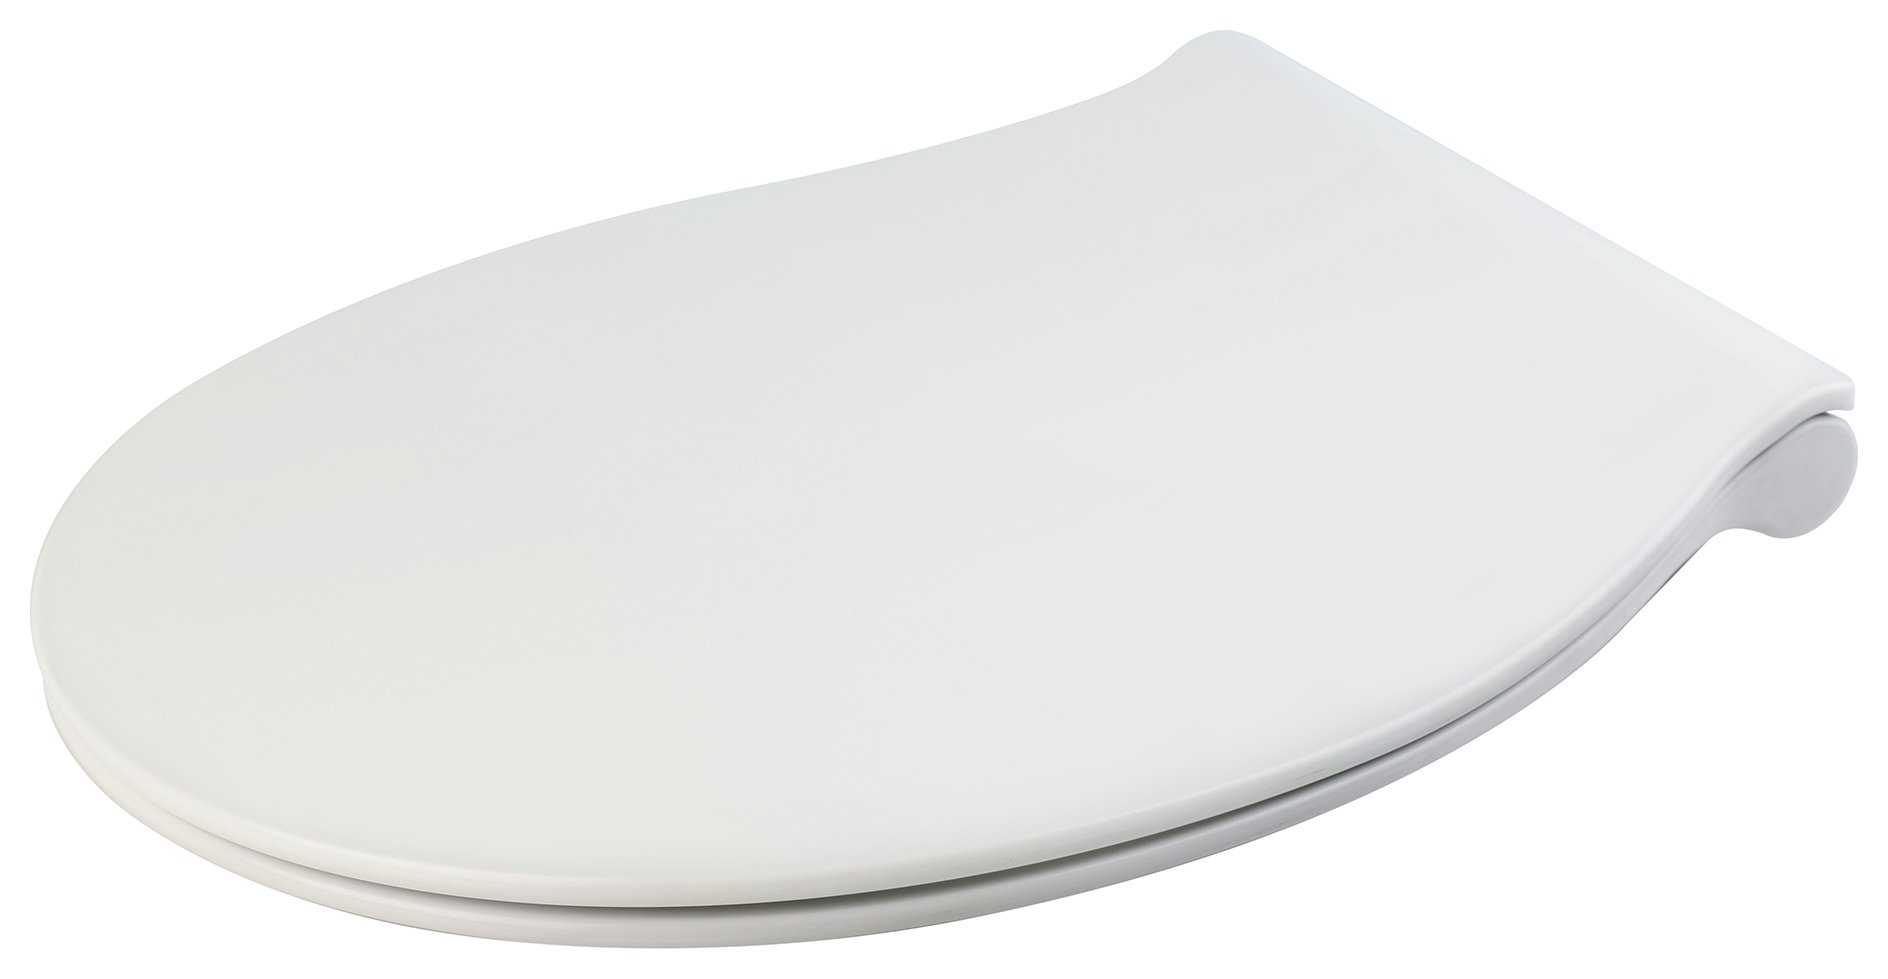 Croydex Sensori Self Closing Toilet Seat - White